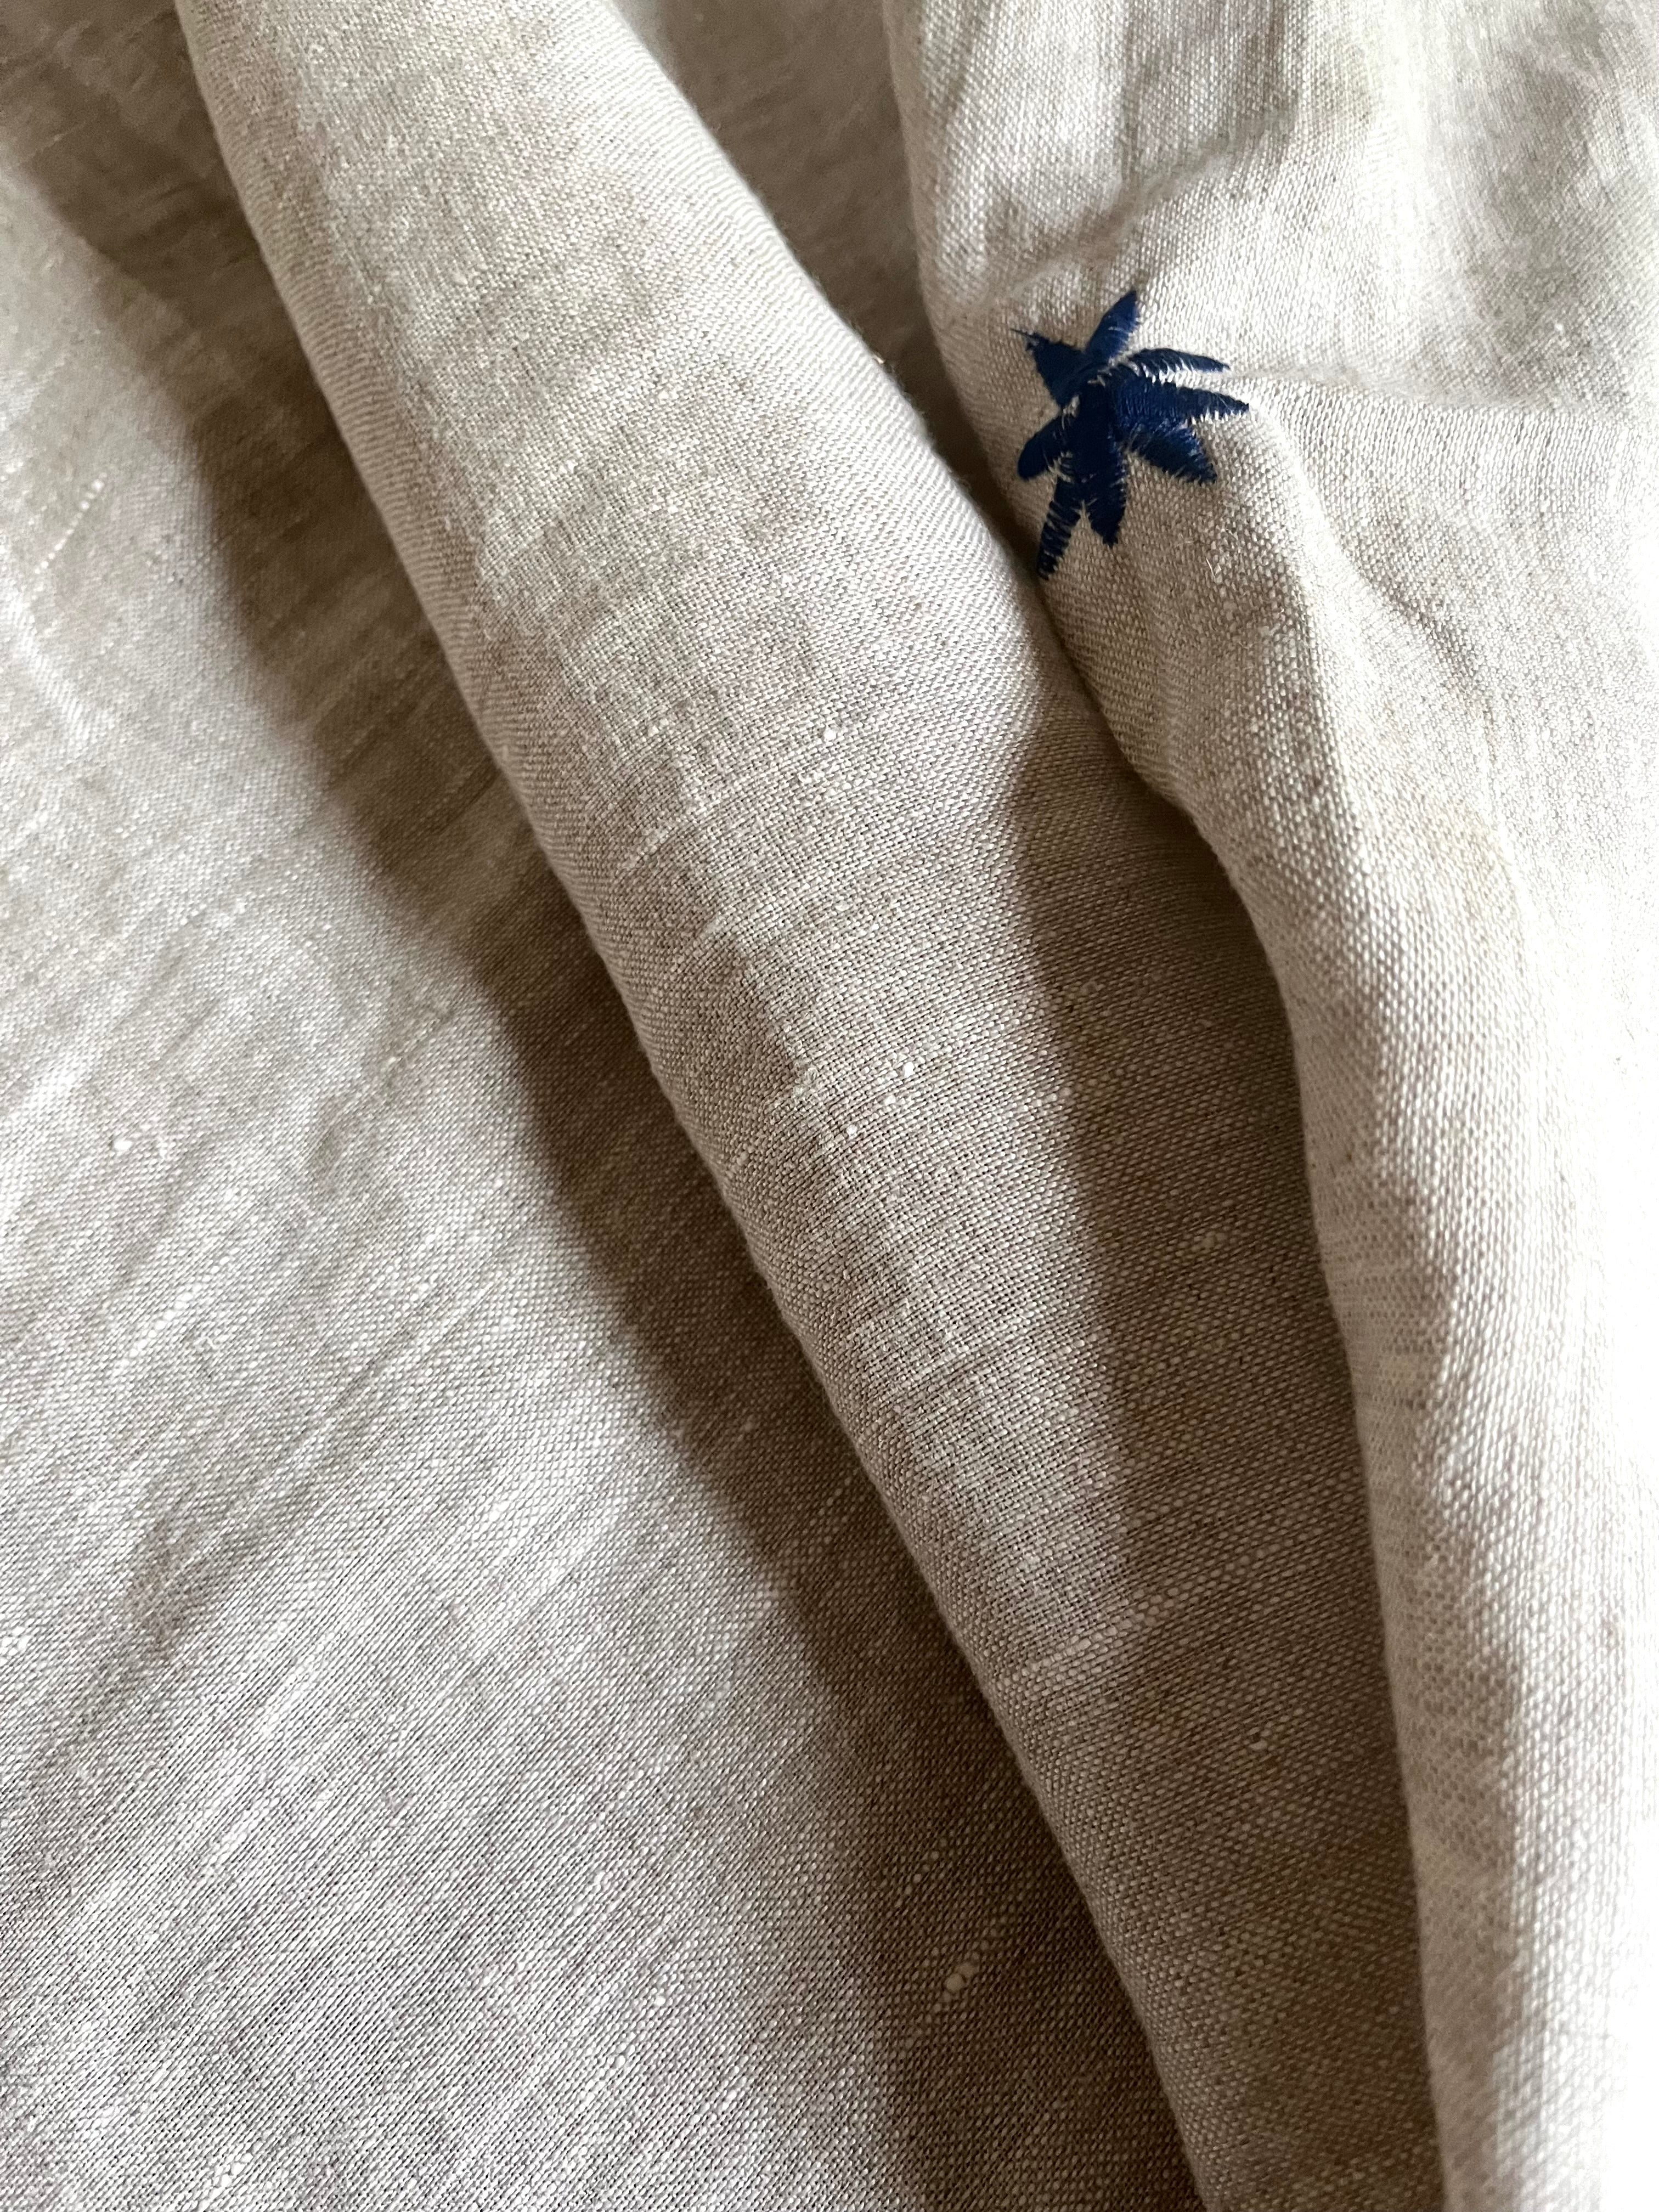 Just a Throw…Überwurf, Decke, Plaid aus naturfarbenem Leinen mit blauer Blüte